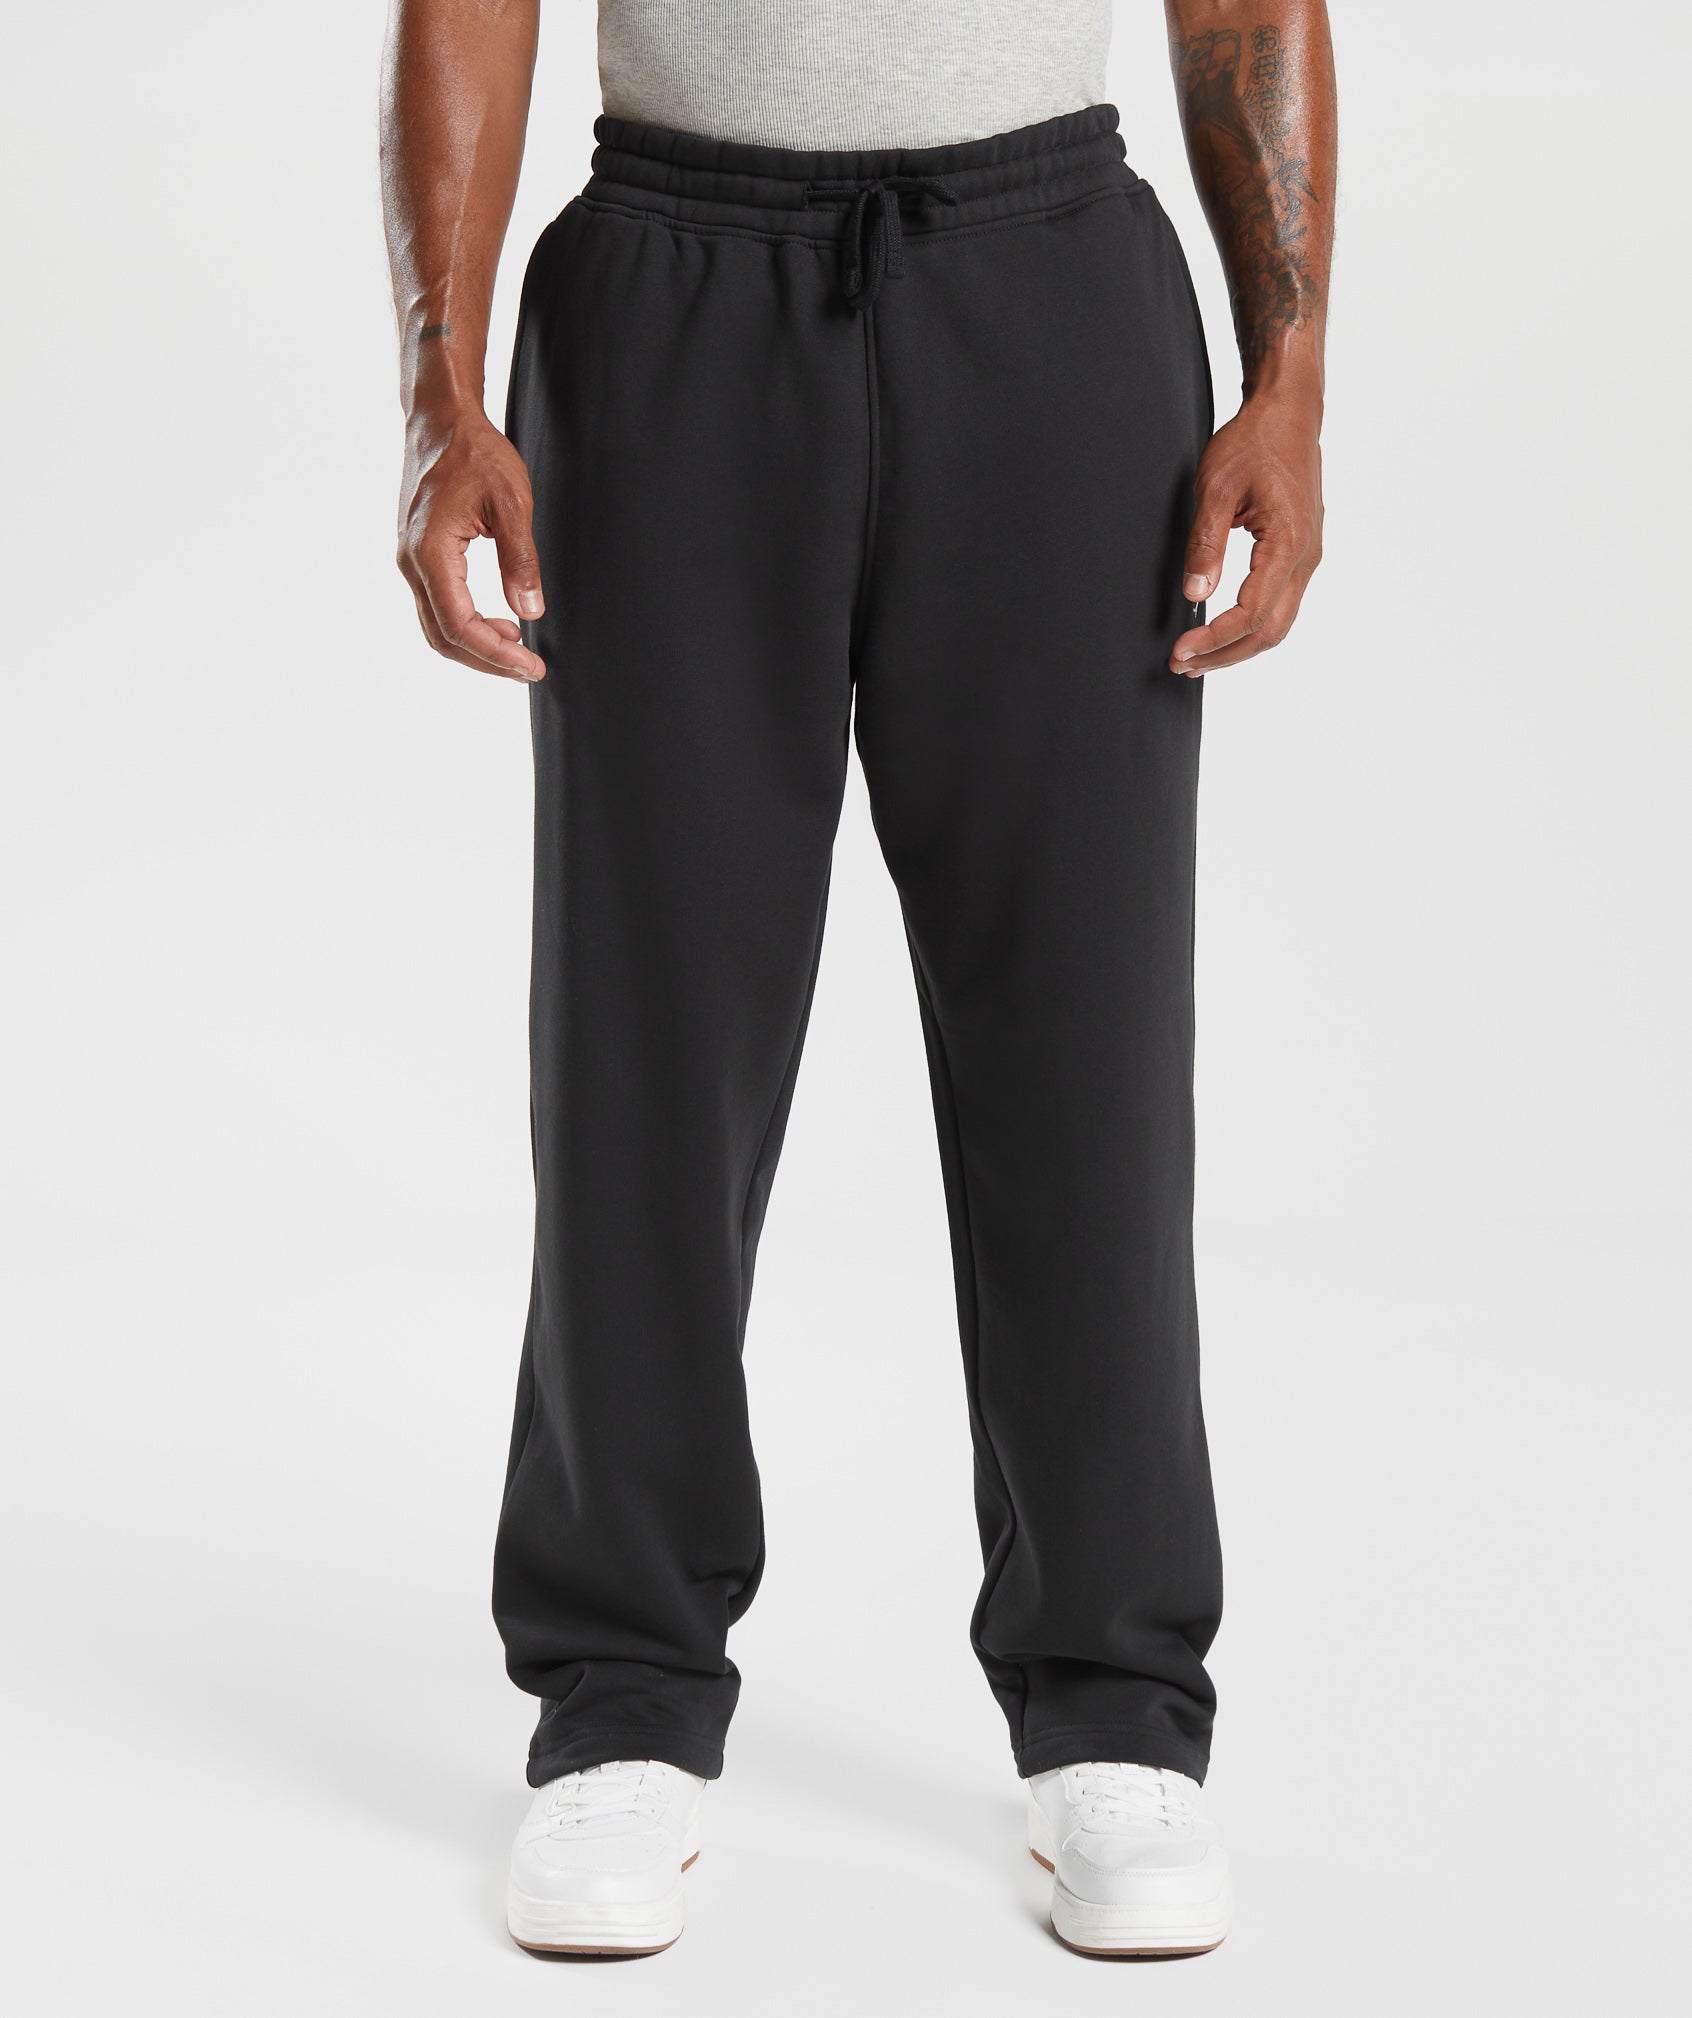 ABECEL Pants Men, Gym Men's Trousers Jogging Tight Sweatpants